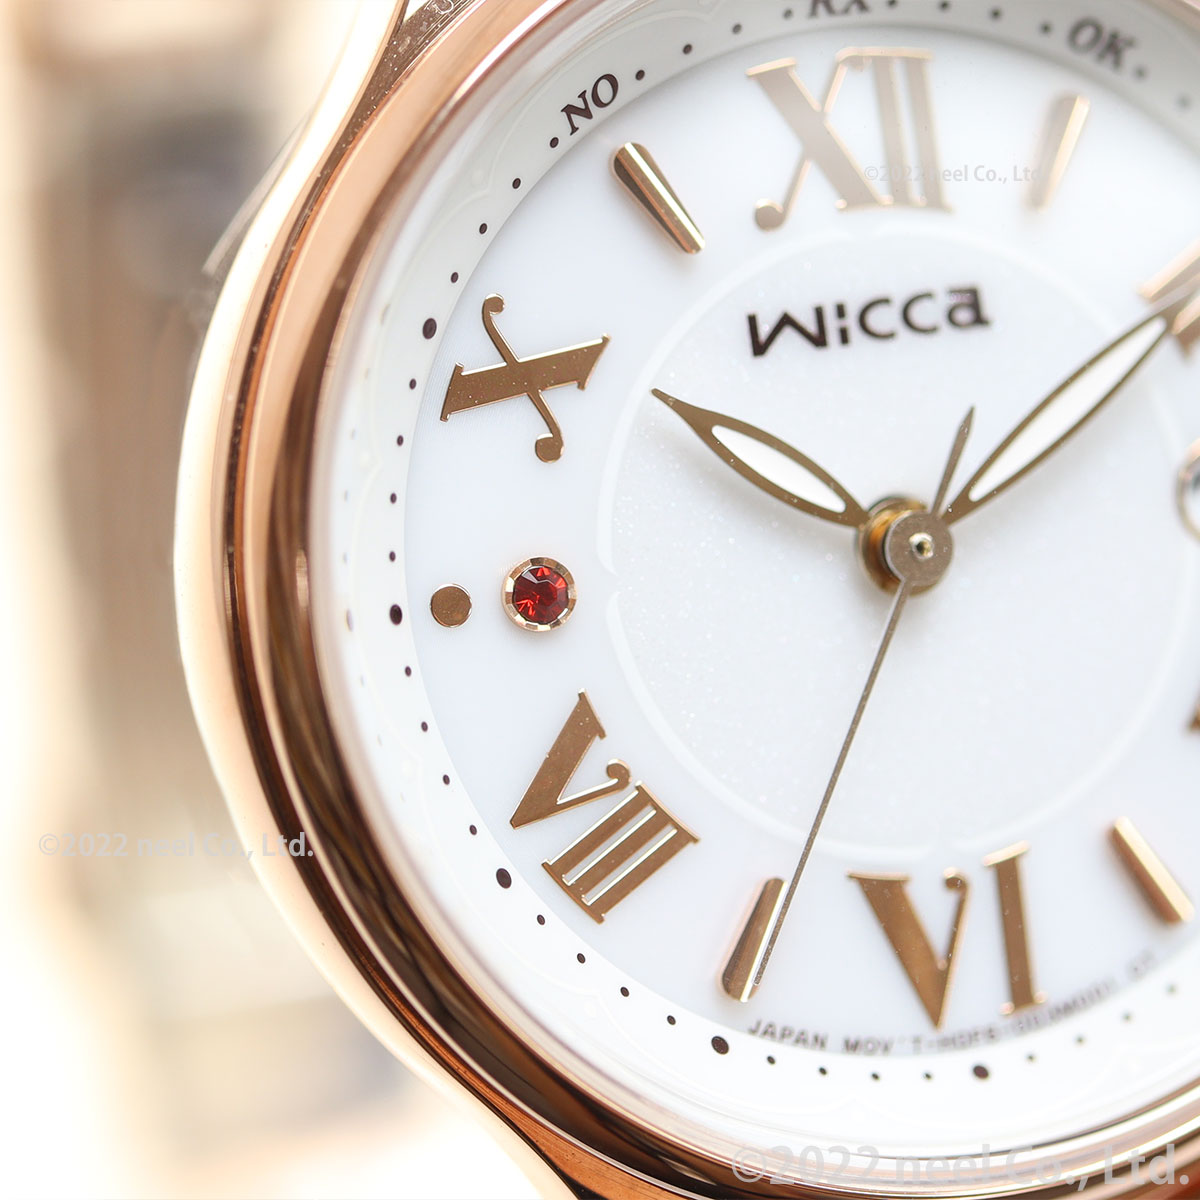 シチズン ウィッカ CITIZEN wicca ソーラーテック 電波時計 腕時計 レディース マスコミモデル KS1-864-11 甘い ショートケーキ イメージ